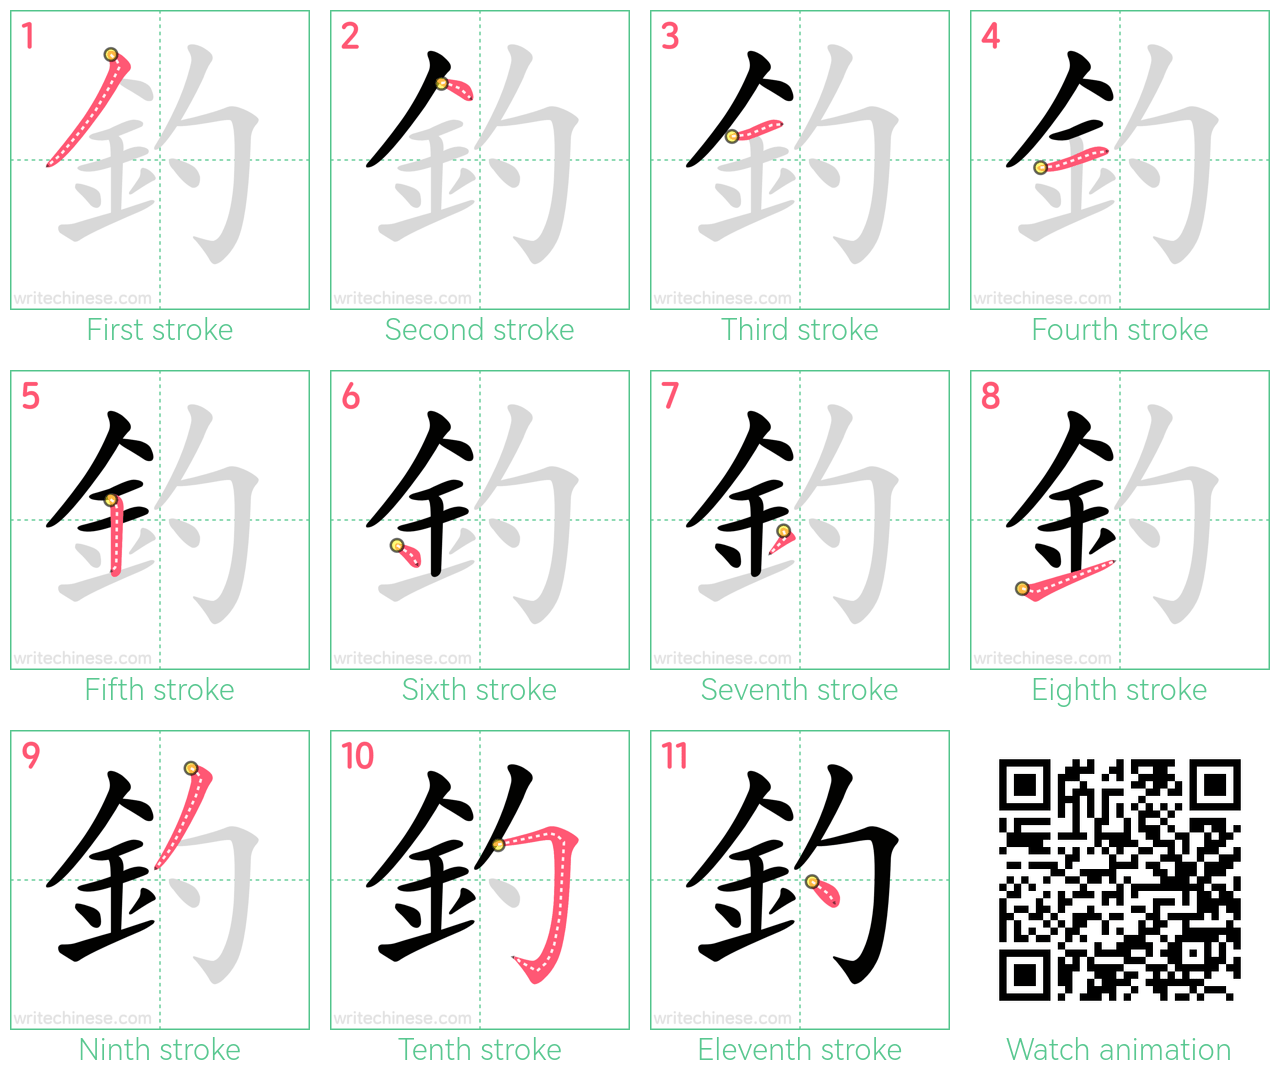 釣 step-by-step stroke order diagrams